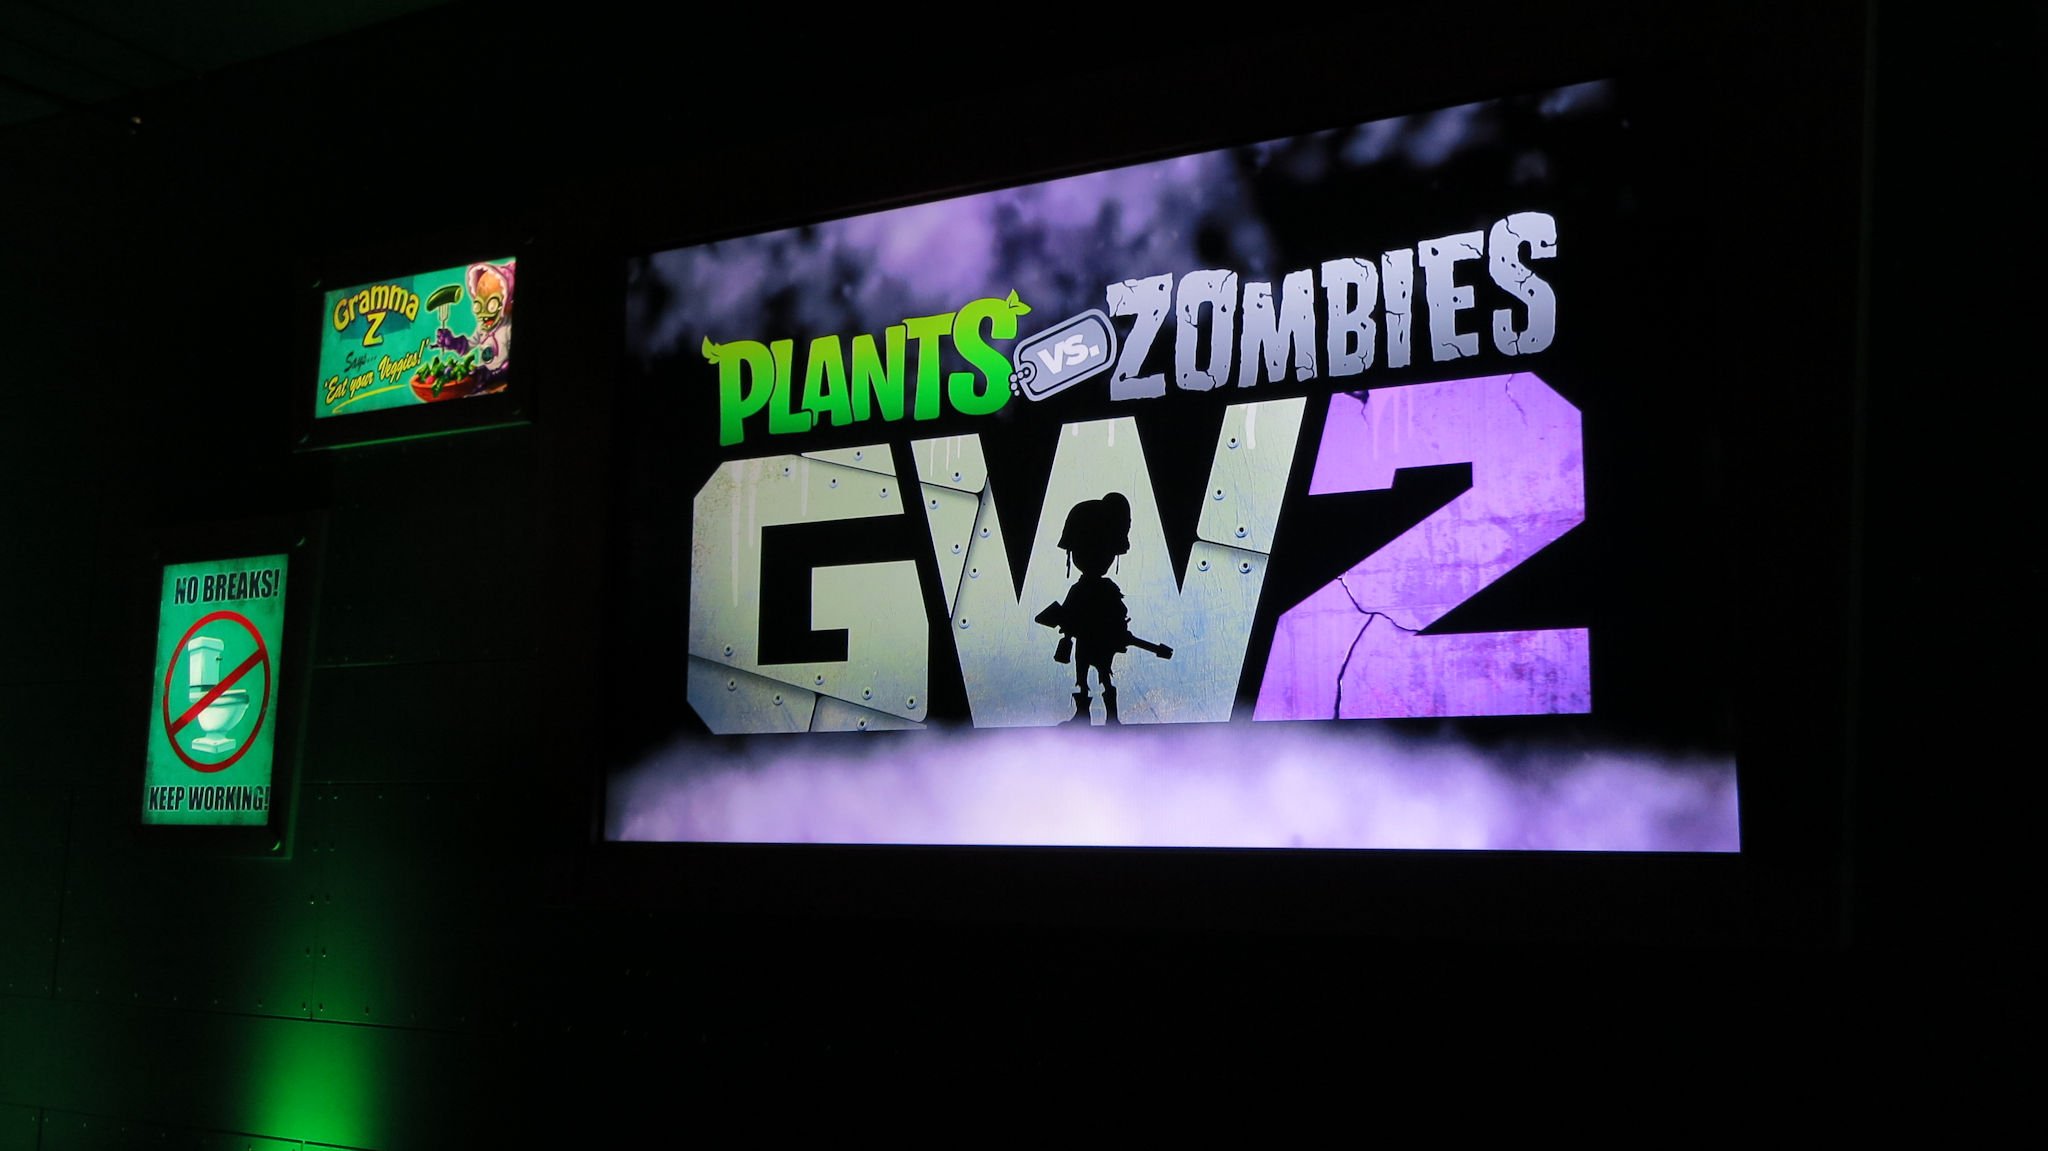 E3-2015-Plants-vs-Zombies-Garden-Warfare-logo-photos.jpg